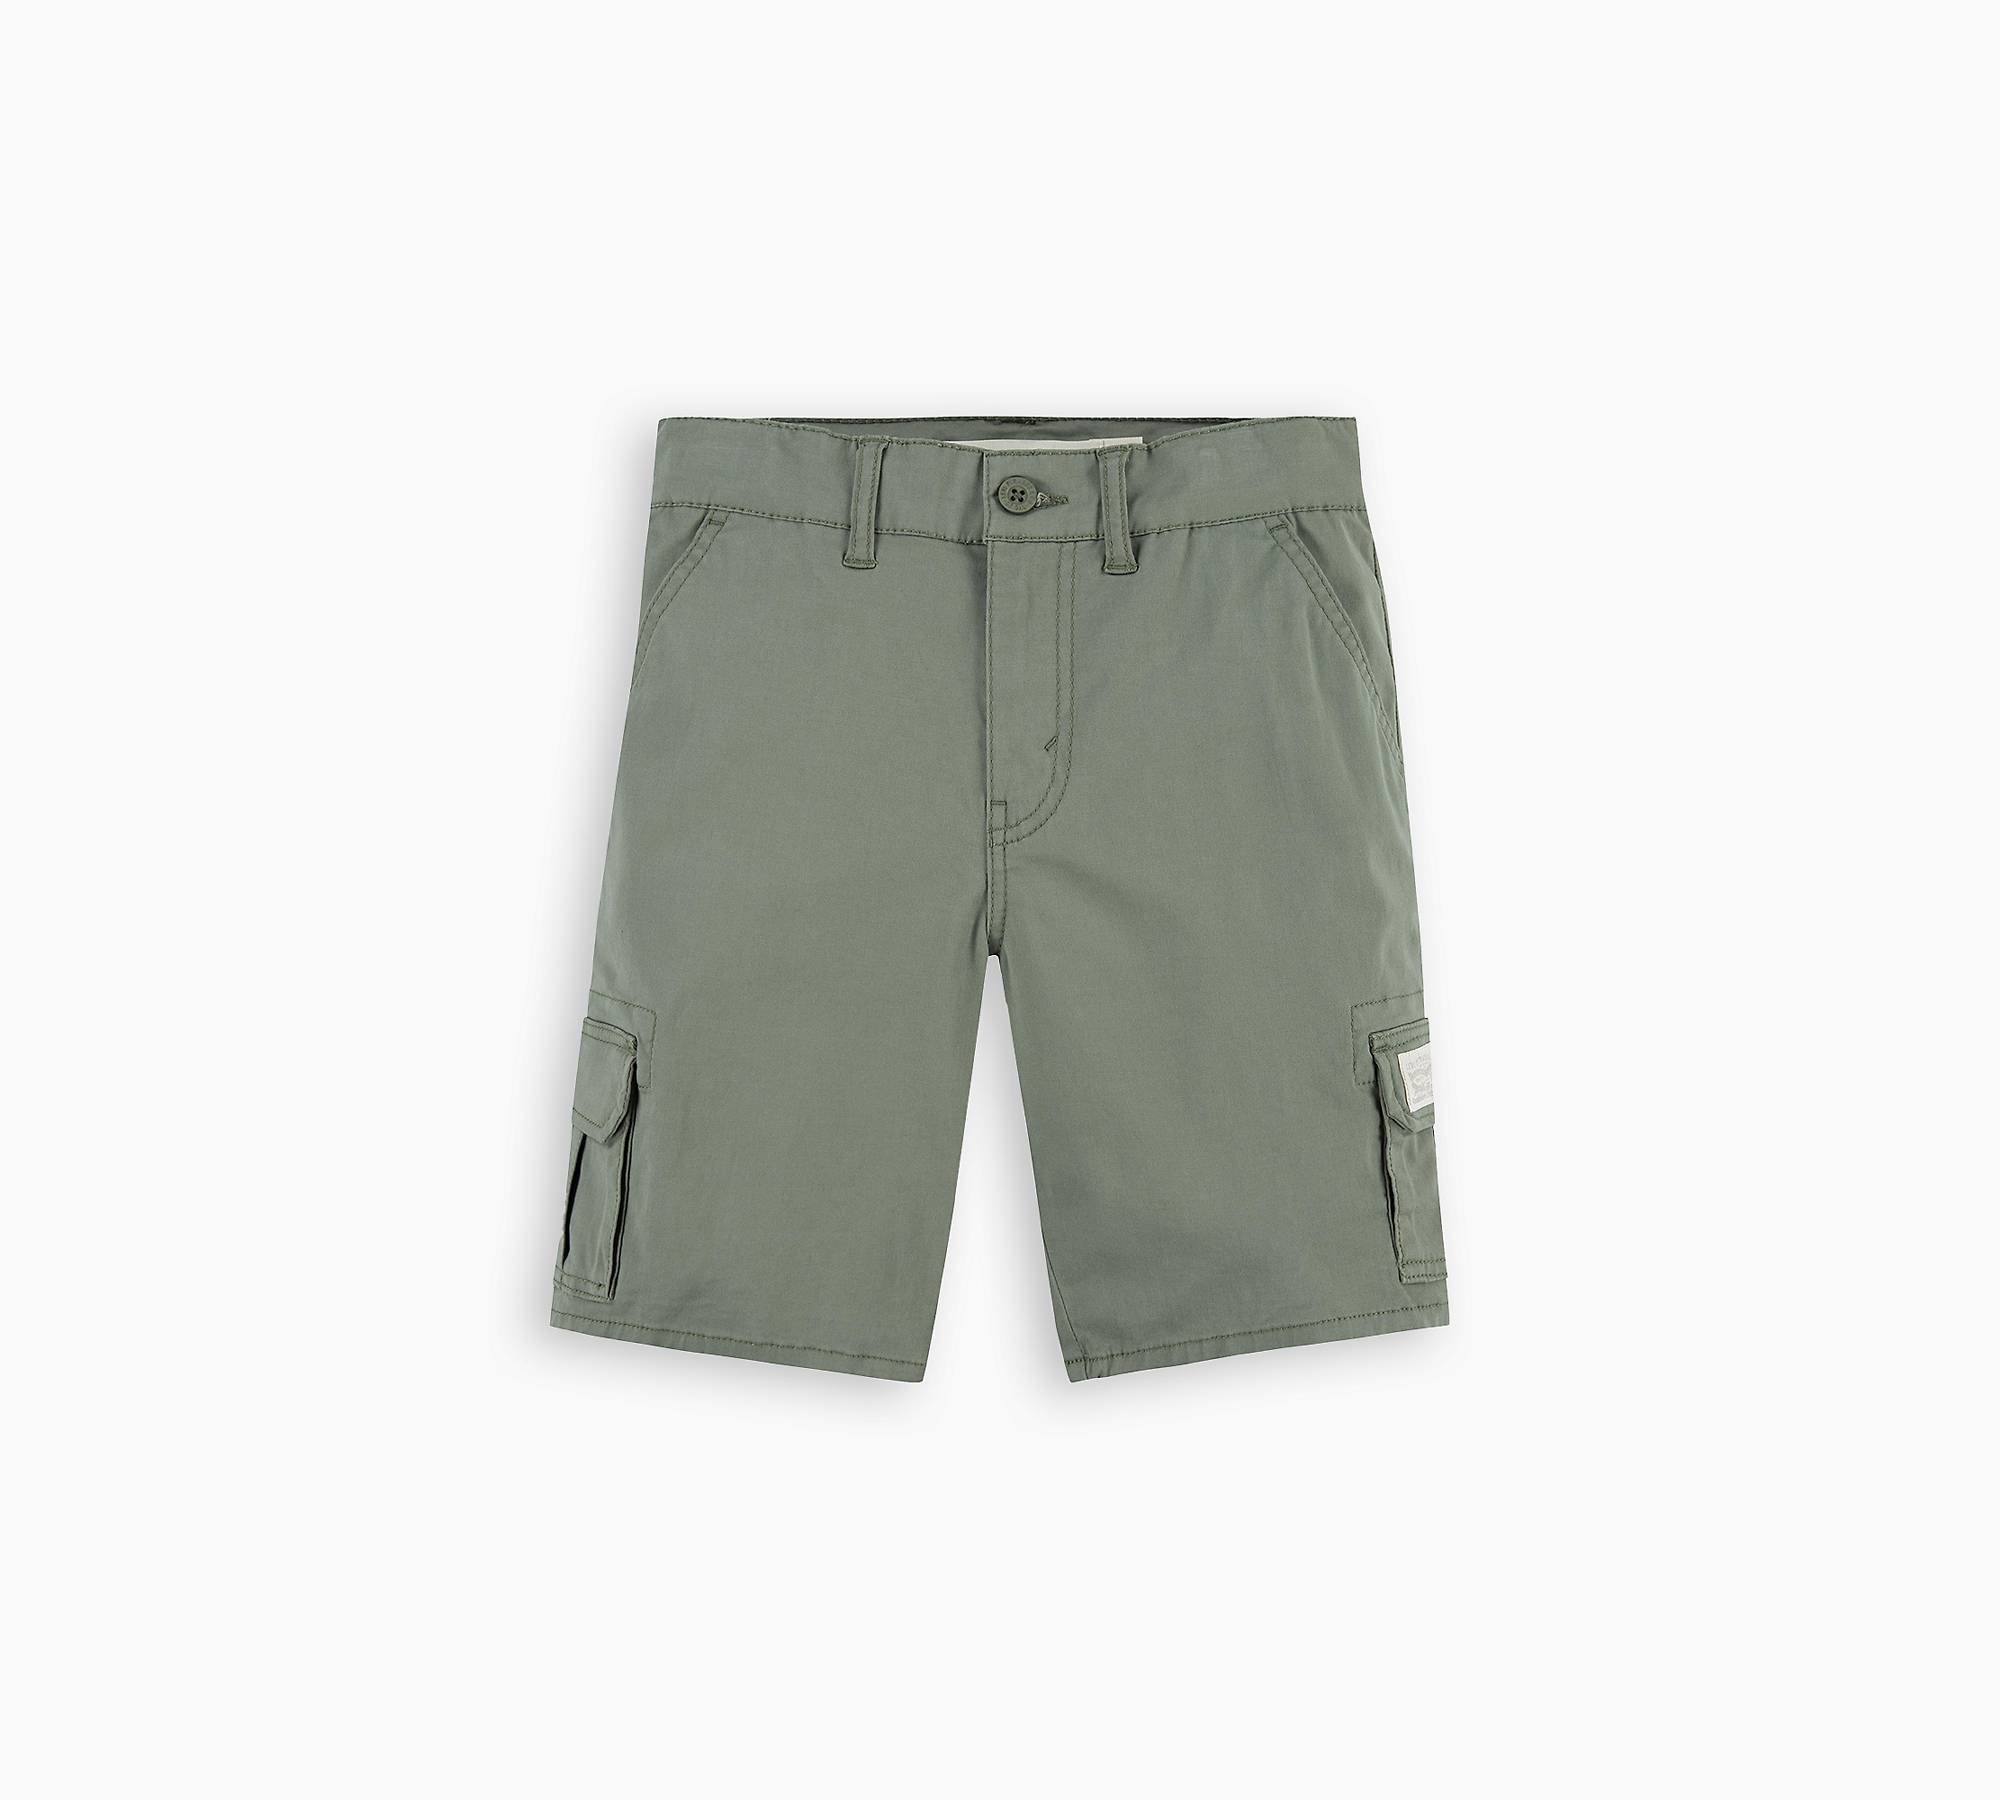 Kinder Standard Cargo-Shorts 1